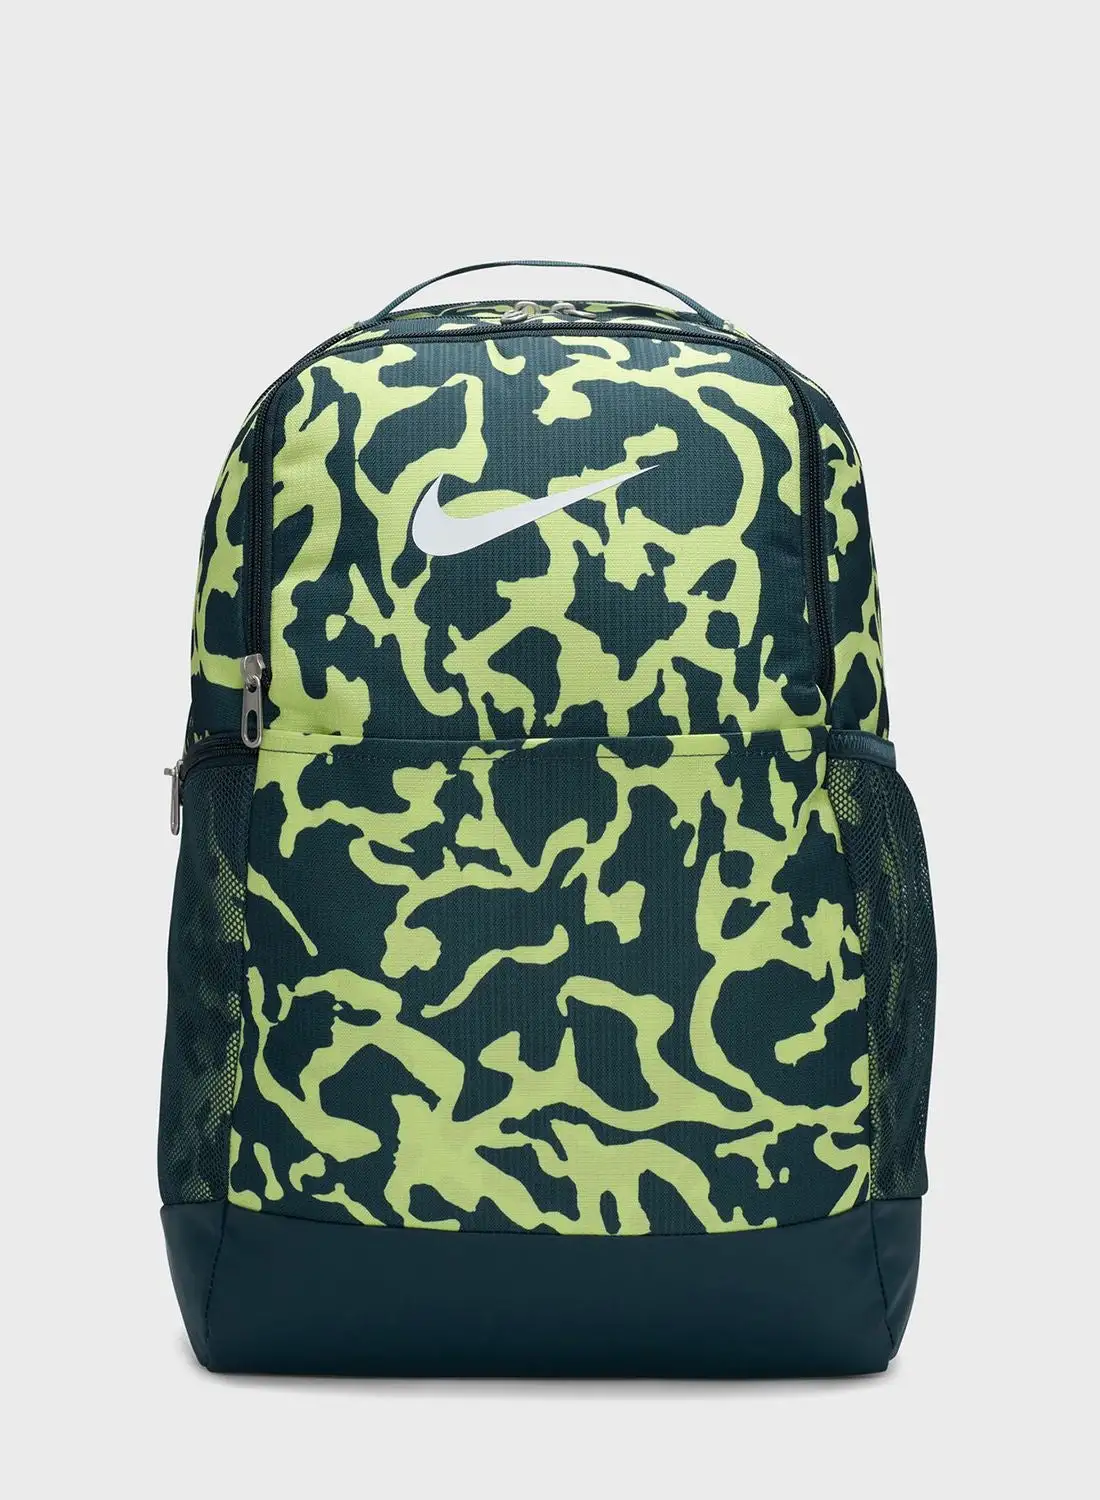 Nike All Over Printed Fa23 Brasilia Backpack - 9.5